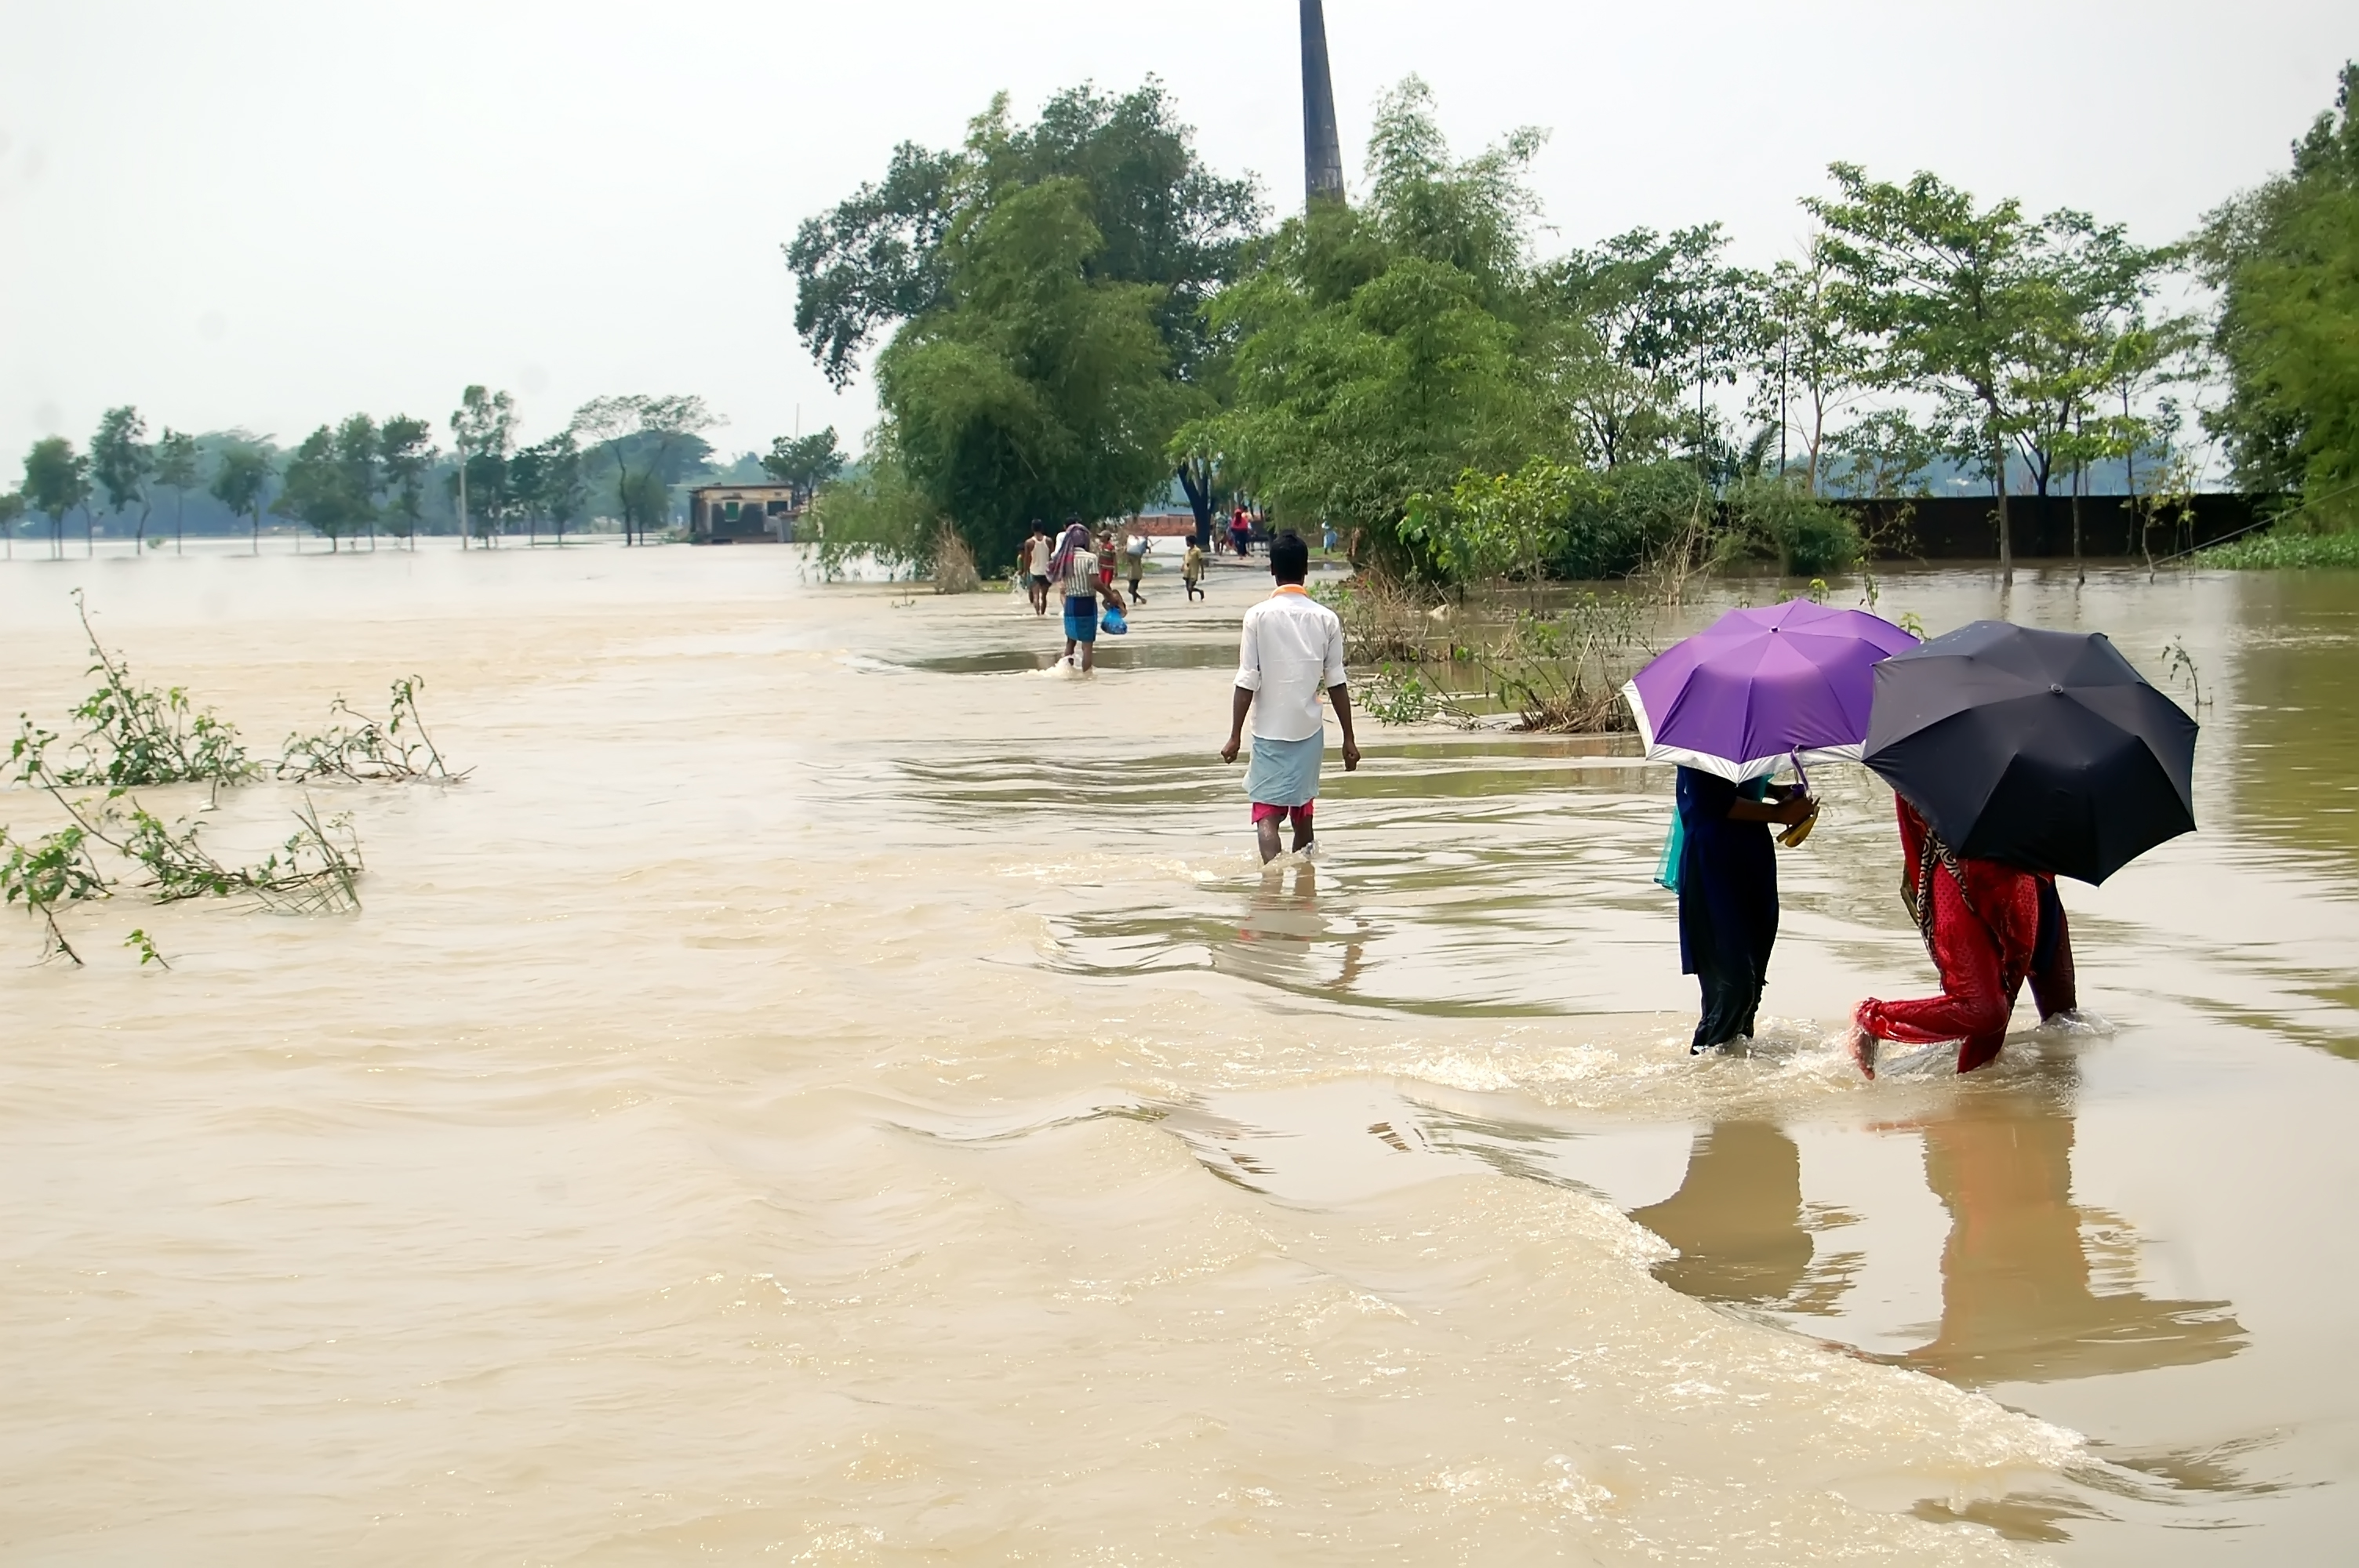 People walking through brown flood waters